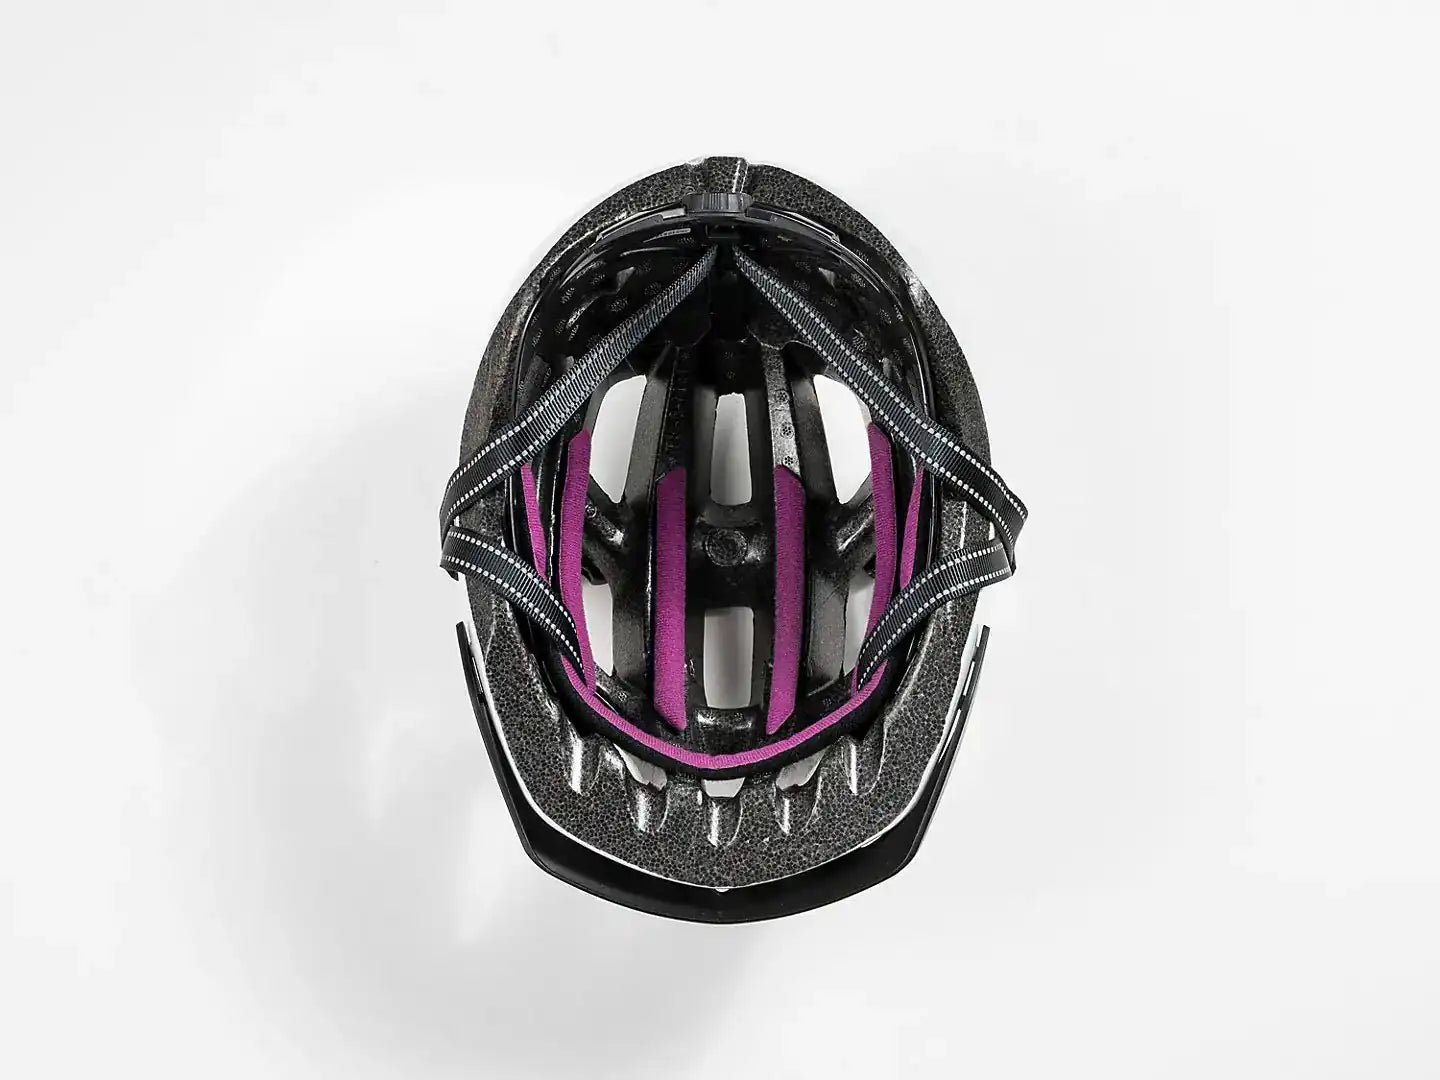 Helmet Bontrager Solstice Wheels Bikes